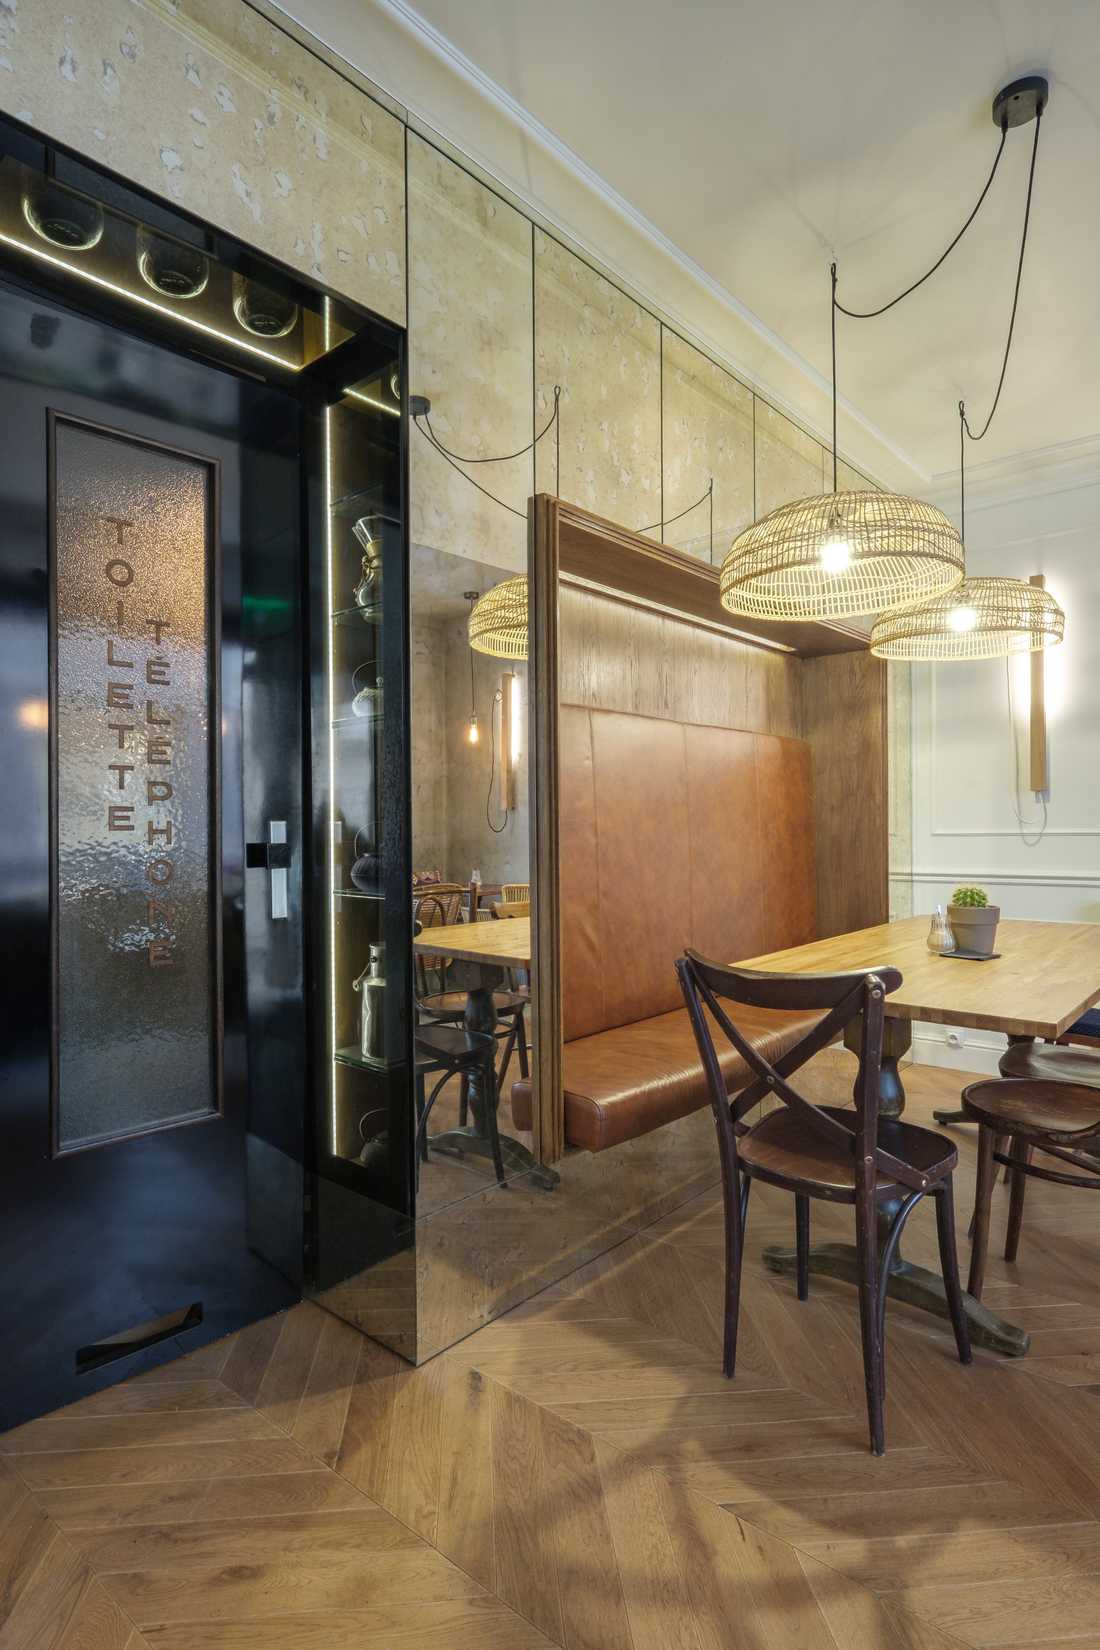 Porte toilettes et téléphone dans un authenthique café parisien